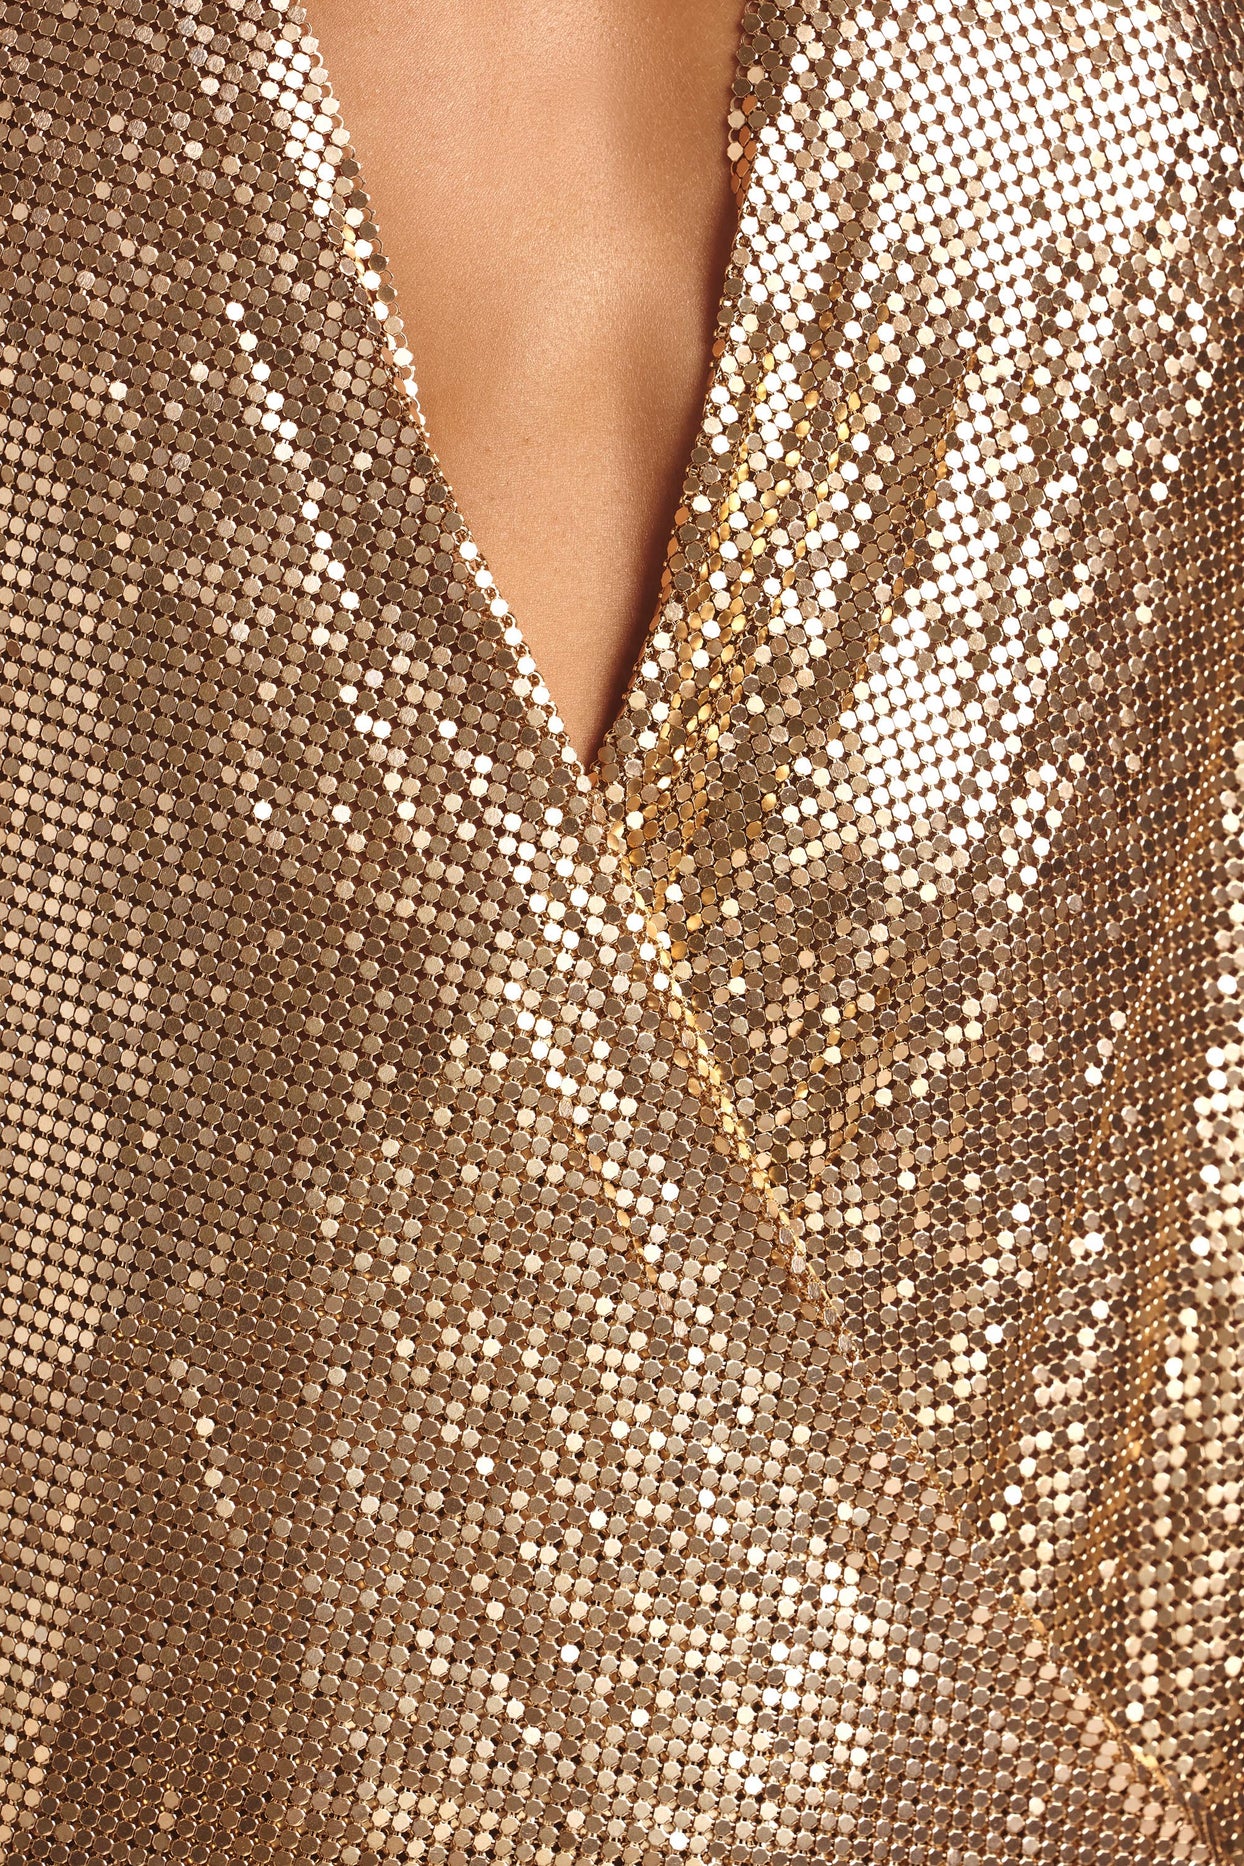 Mini-robe portefeuille en cotte de mailles de qualité supérieure, dorée